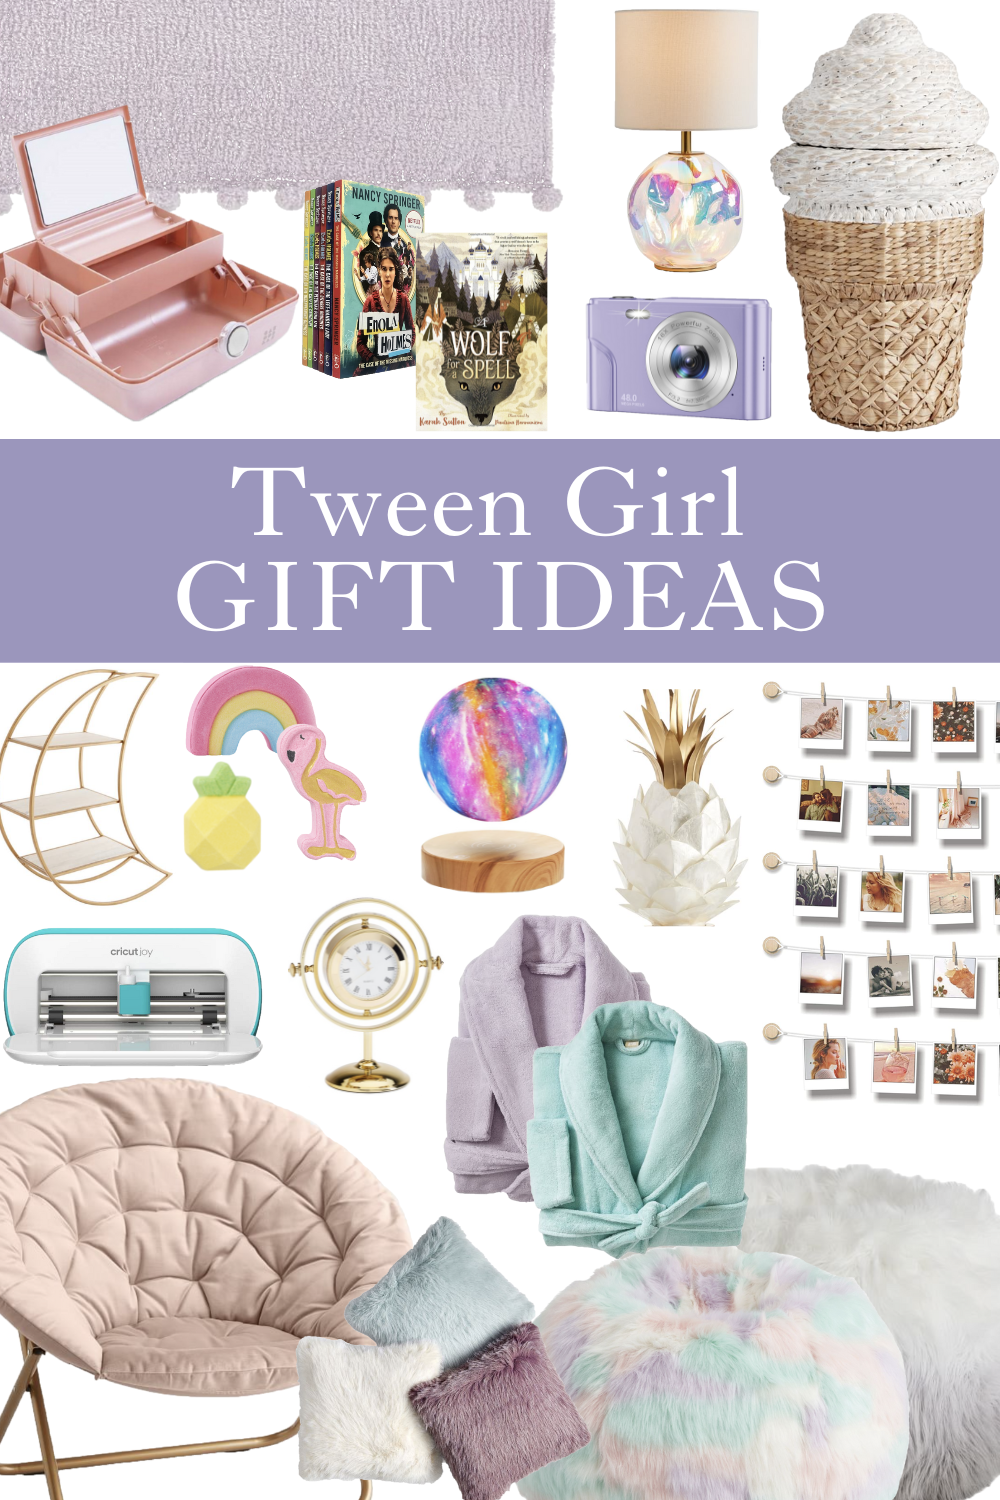 Tween girl gifts | Gifts for Tween Girls